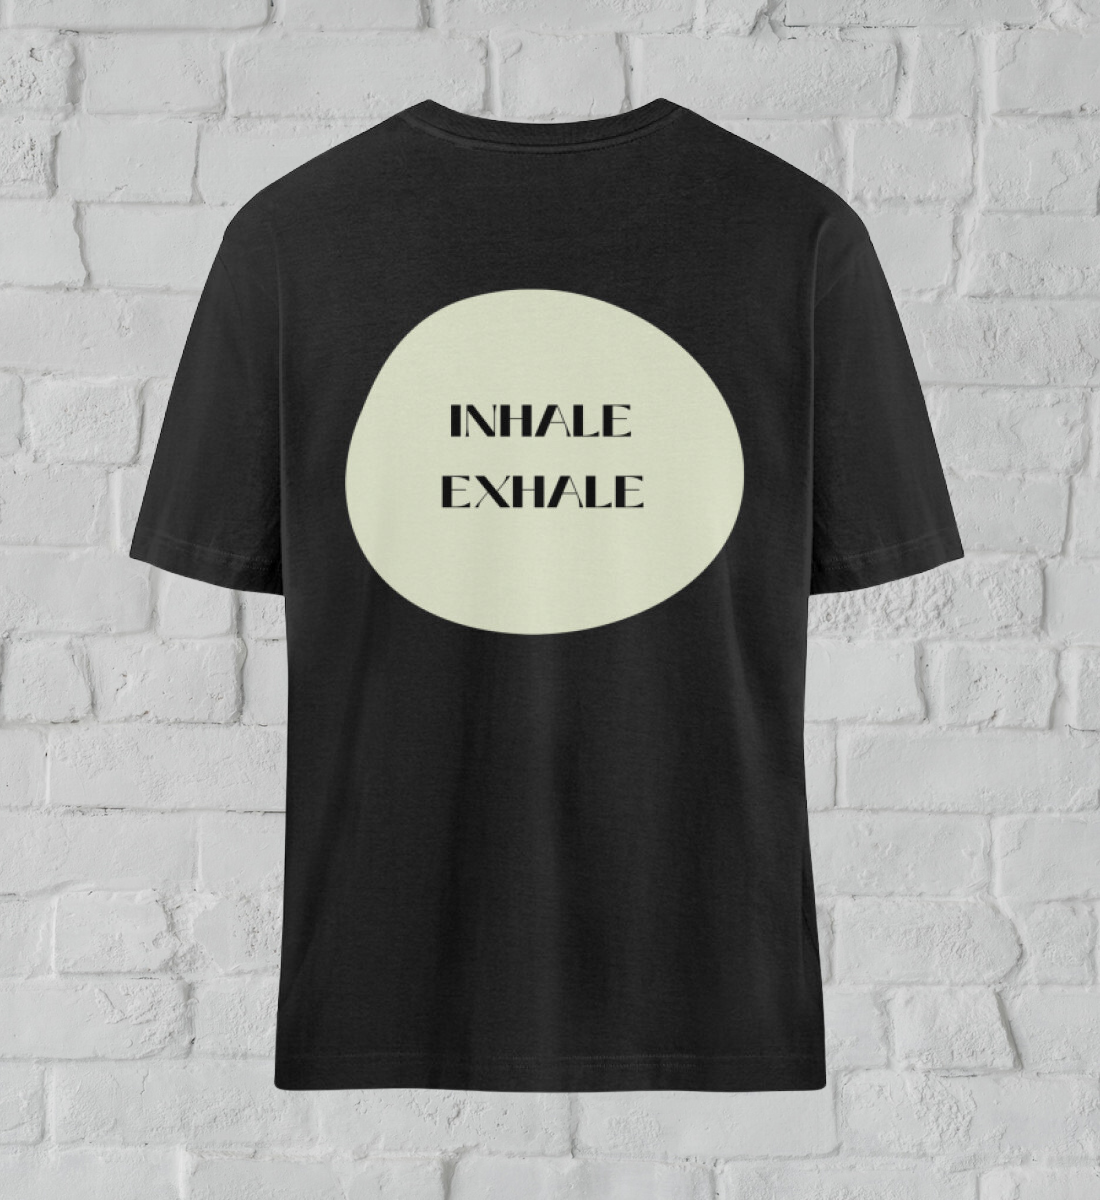  inhale exhale l yoga shirt schwarz l nachhaltiges t-shirt l bio yoga kleidung l grüne und umweltfreundliche mode online shoppen